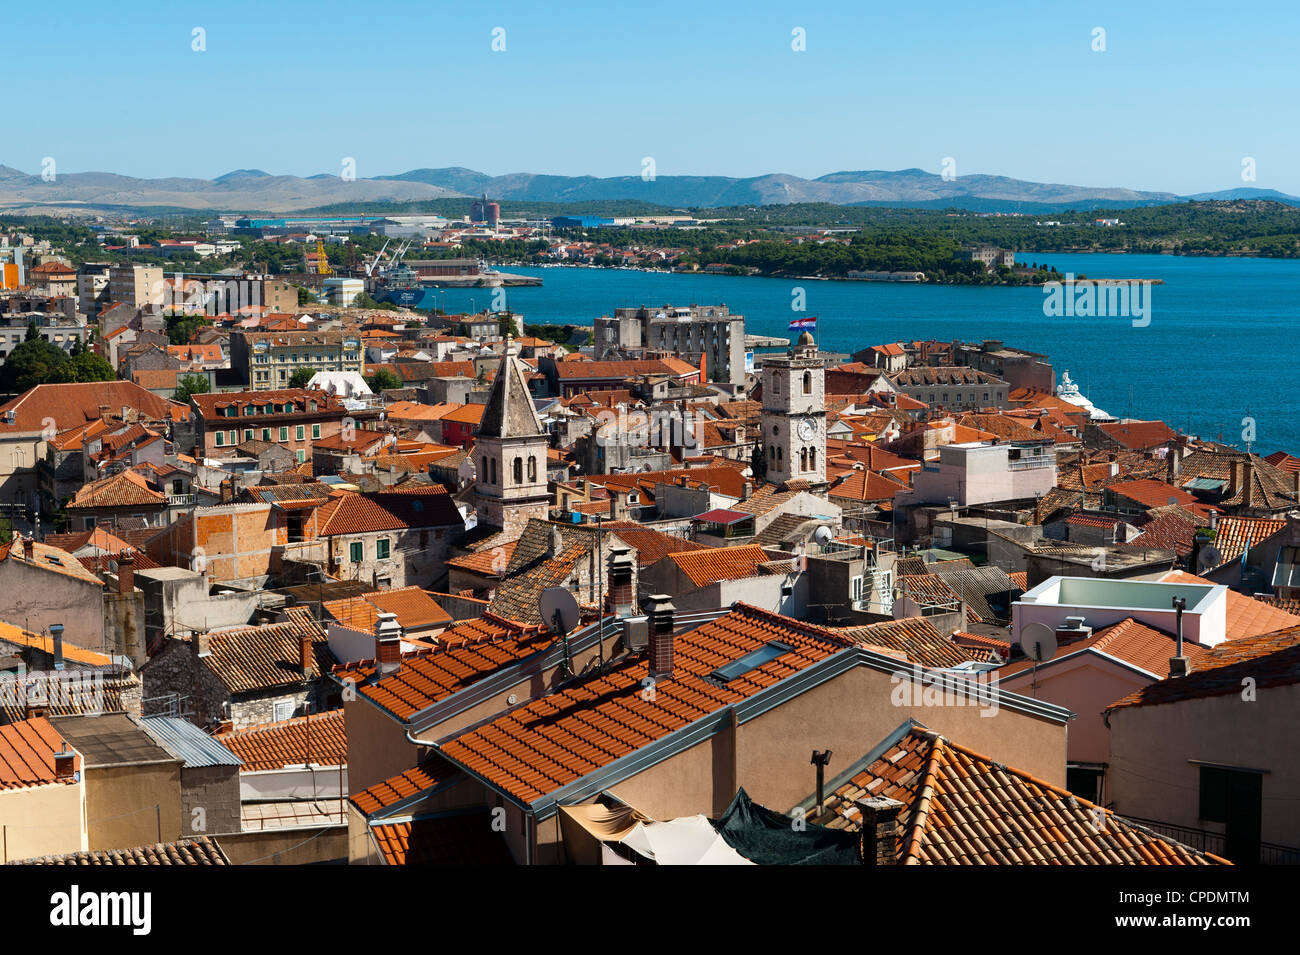 Town of Sibenik, Dalmatia region, Croatia, Europe Stock Photo